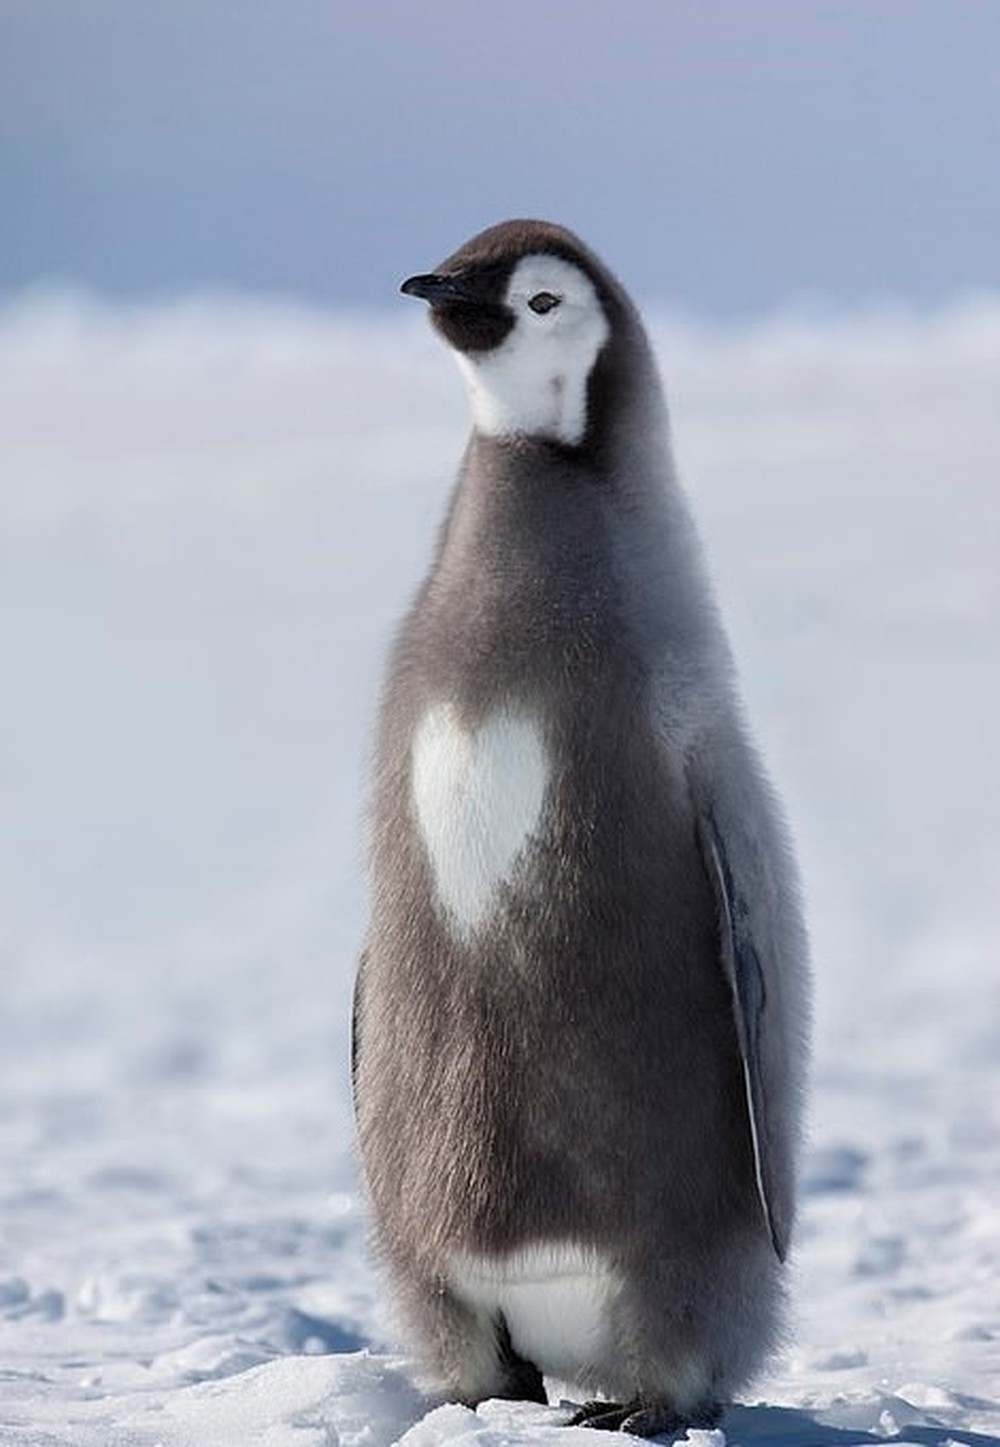 Hình ảnh một chú chim cánh cụt con đang nhìn vào thứ gì đó